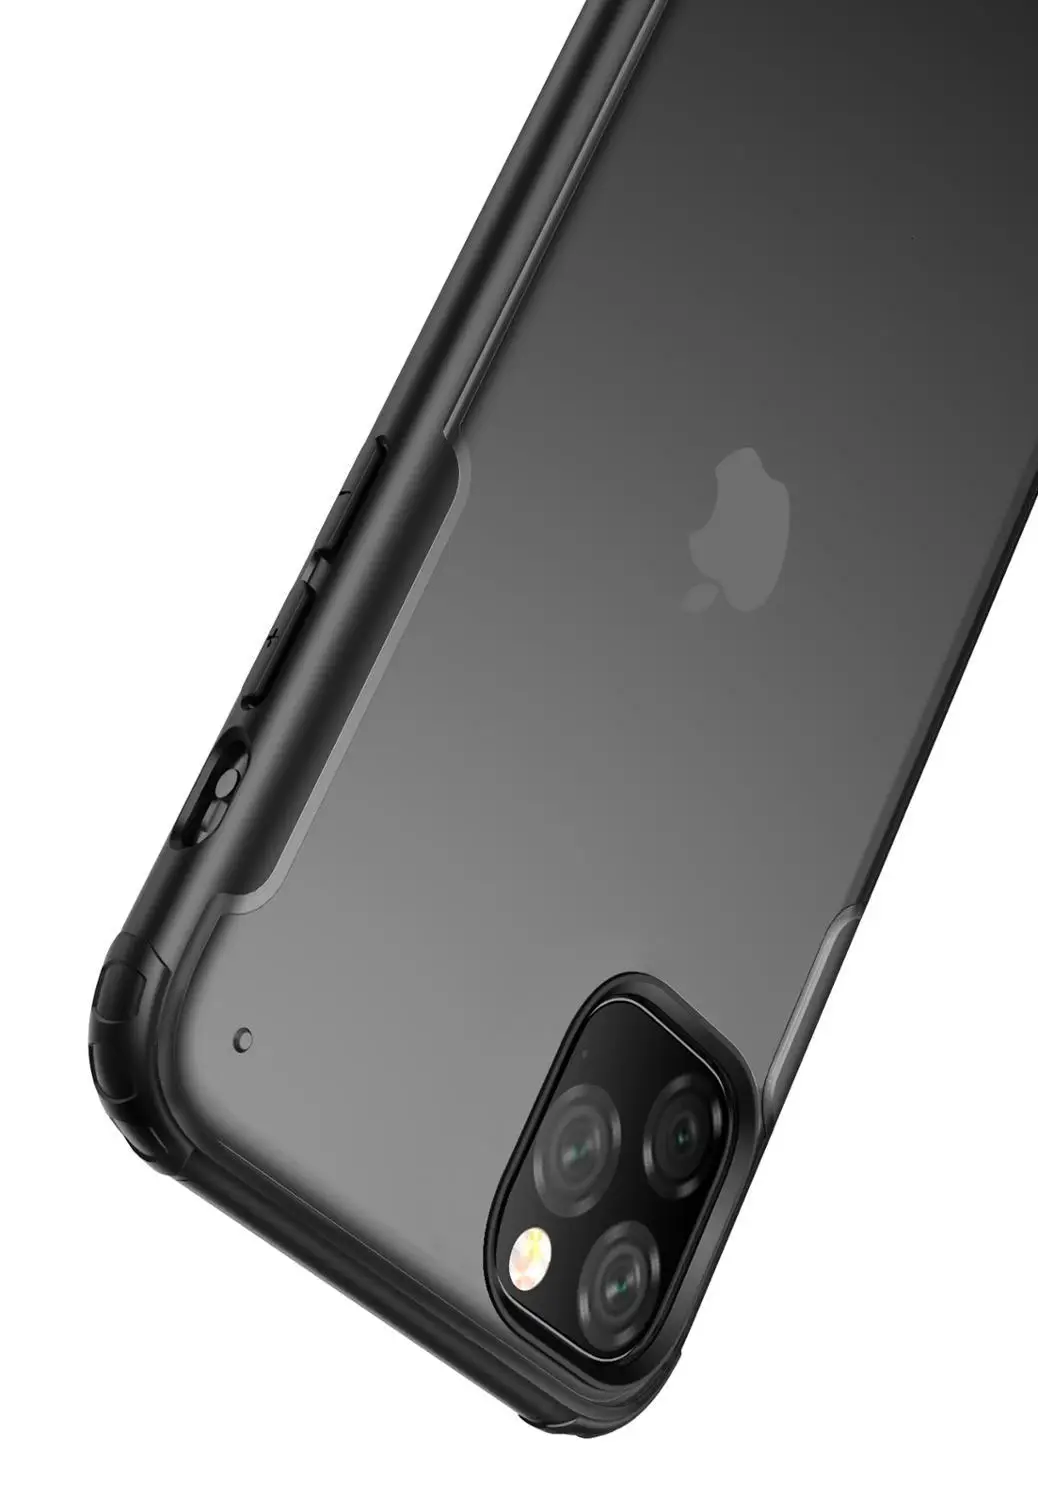 Ударопрочный бампер Броня чехол для Apple iPhone 11 Pro XS Max XR X 8 Plus 7 мягкий чехол для телефона рамка жесткая задняя панель из поликарбоната 50 шт